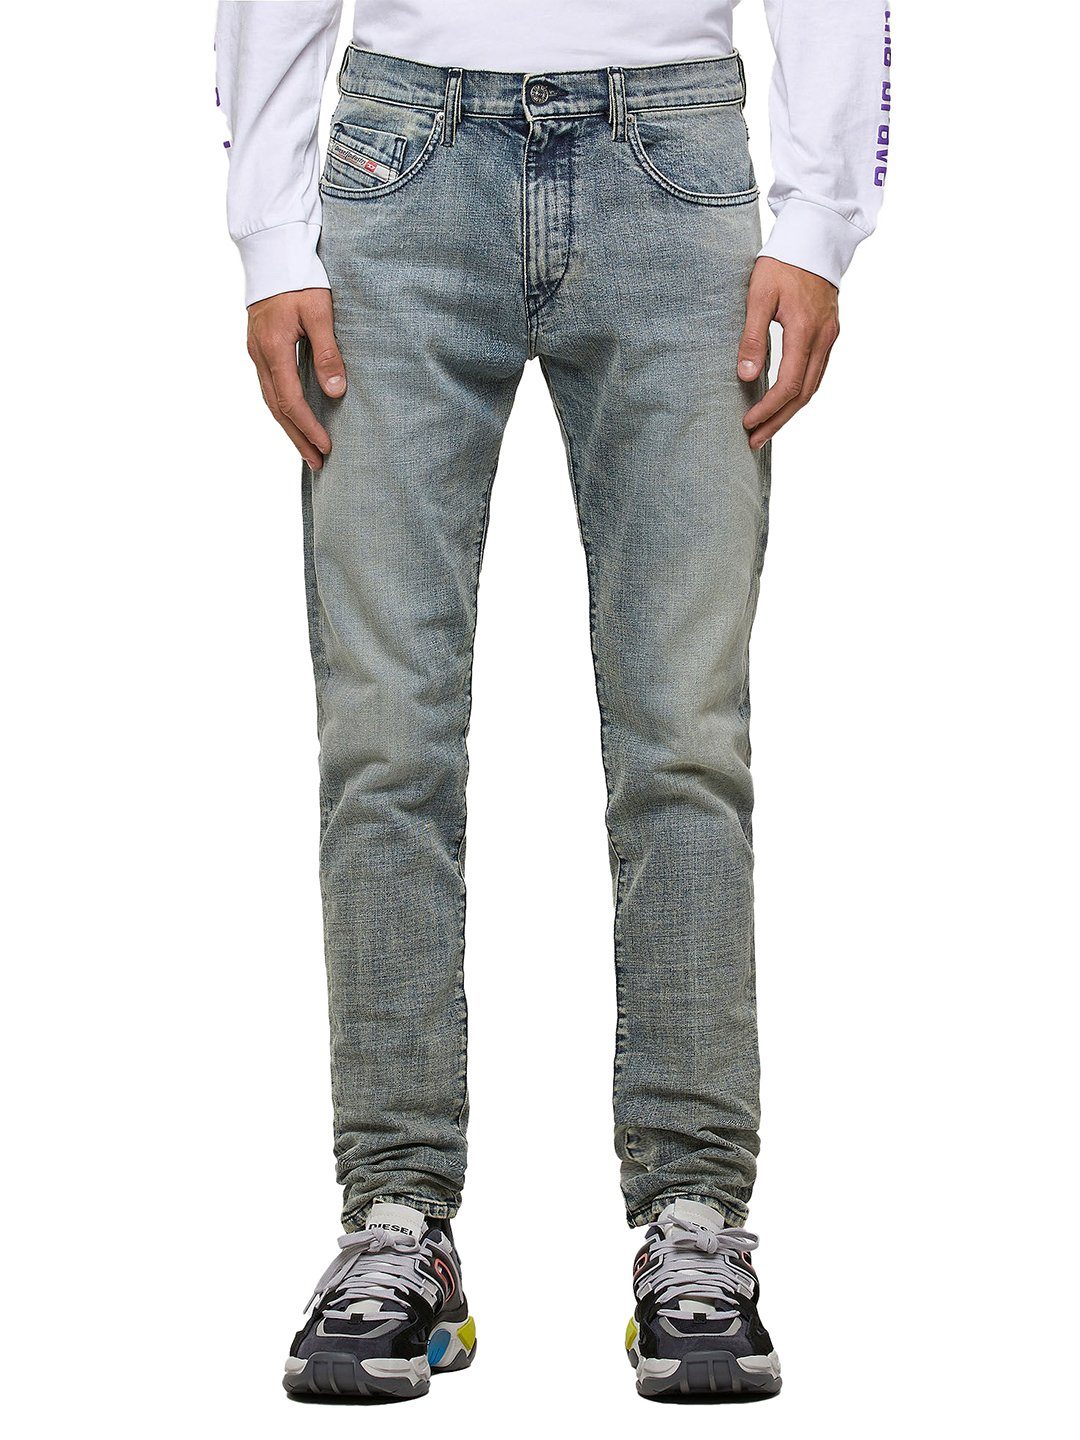 Länge:32 Hose 009NL - Stretch - D-Strukt Diesel Slim-fit-Jeans